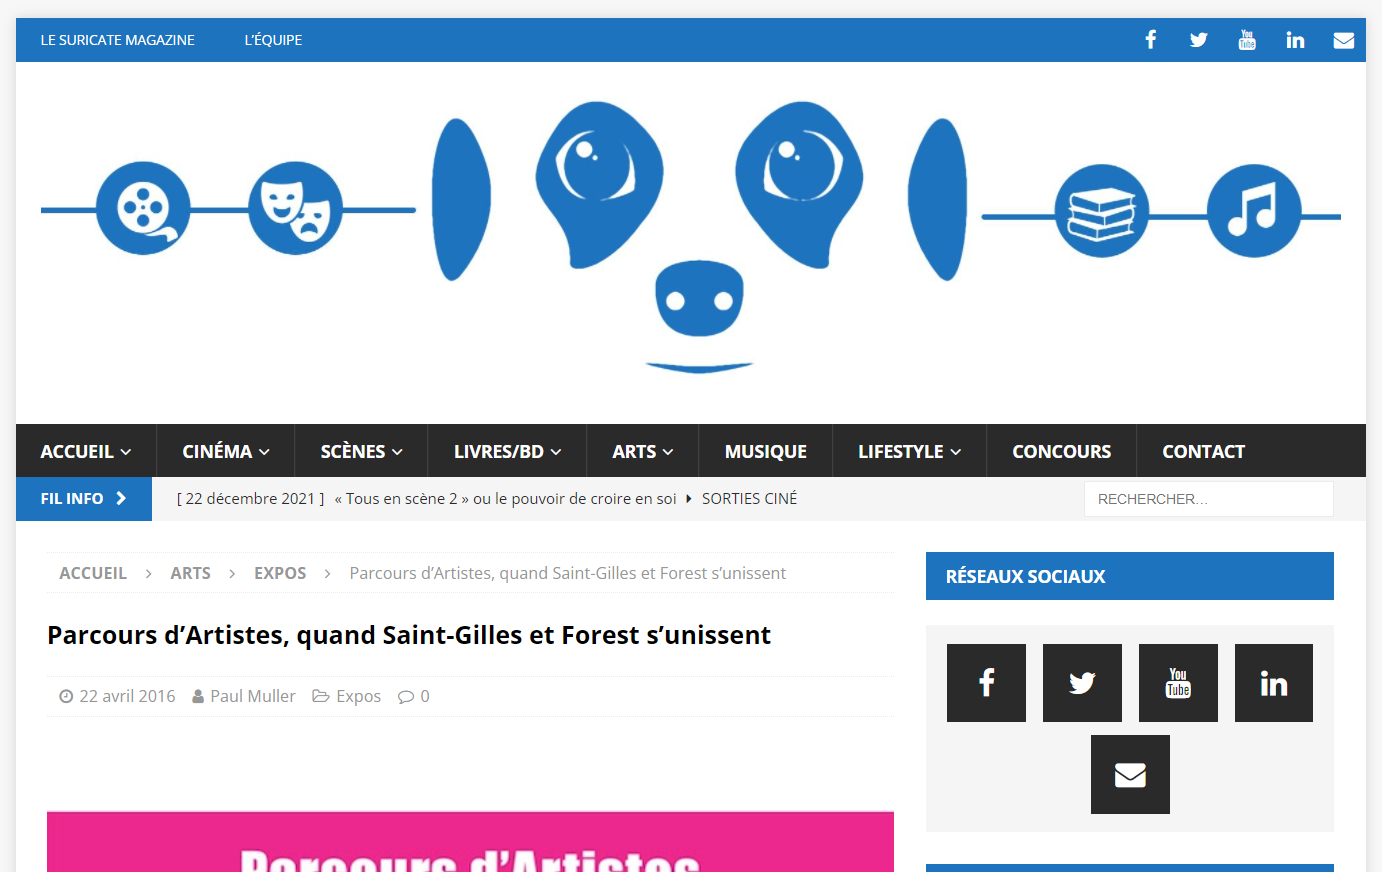 lesuricate.org parcours d artistes Saint-Gilles Forest s'unissent